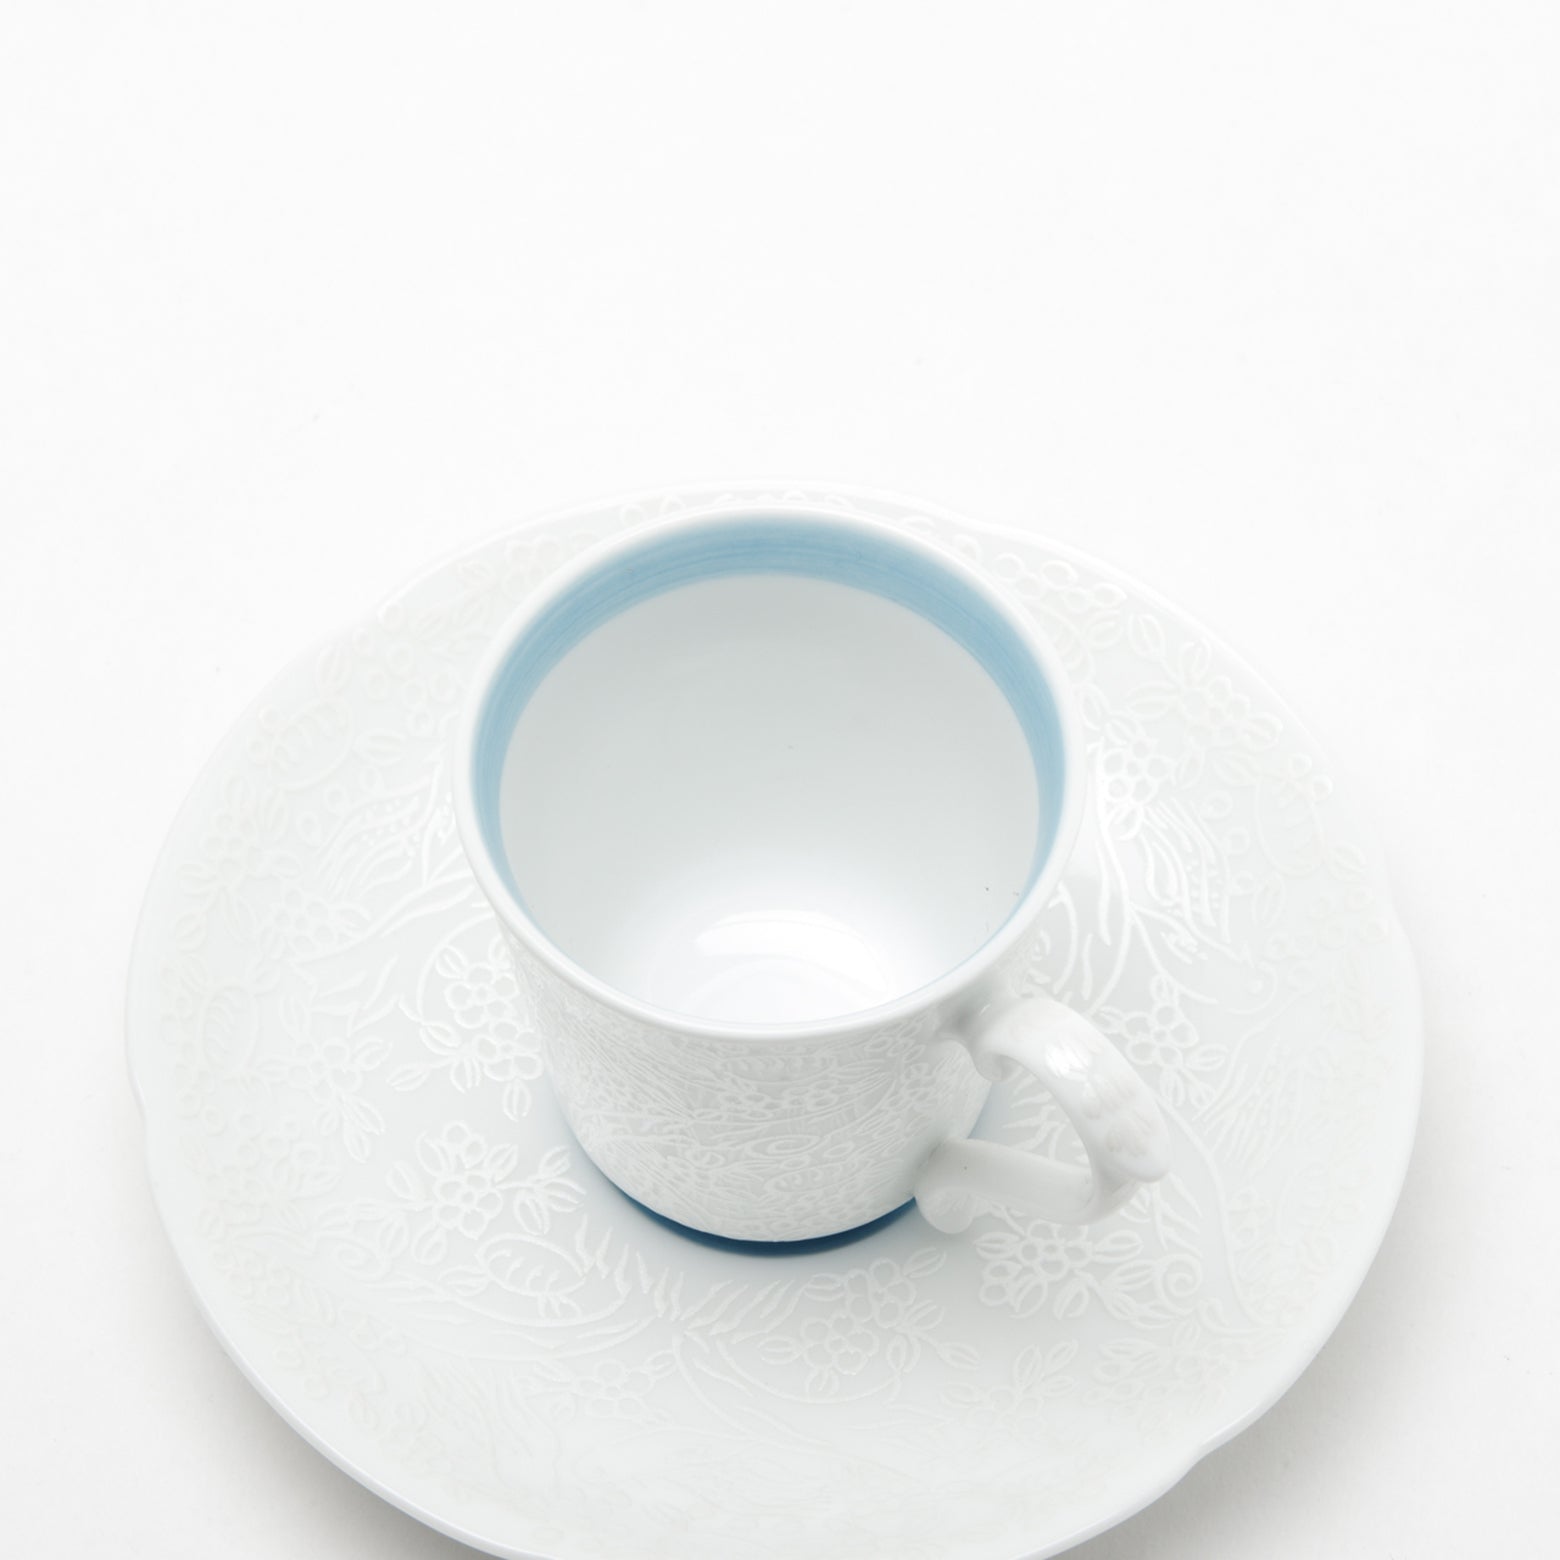 有田焼 錦銀 ペルシャ翡翠巻 エスプレッソ碗皿 60ml/11.5cm Kouraku コーヒーカップ Studio1156